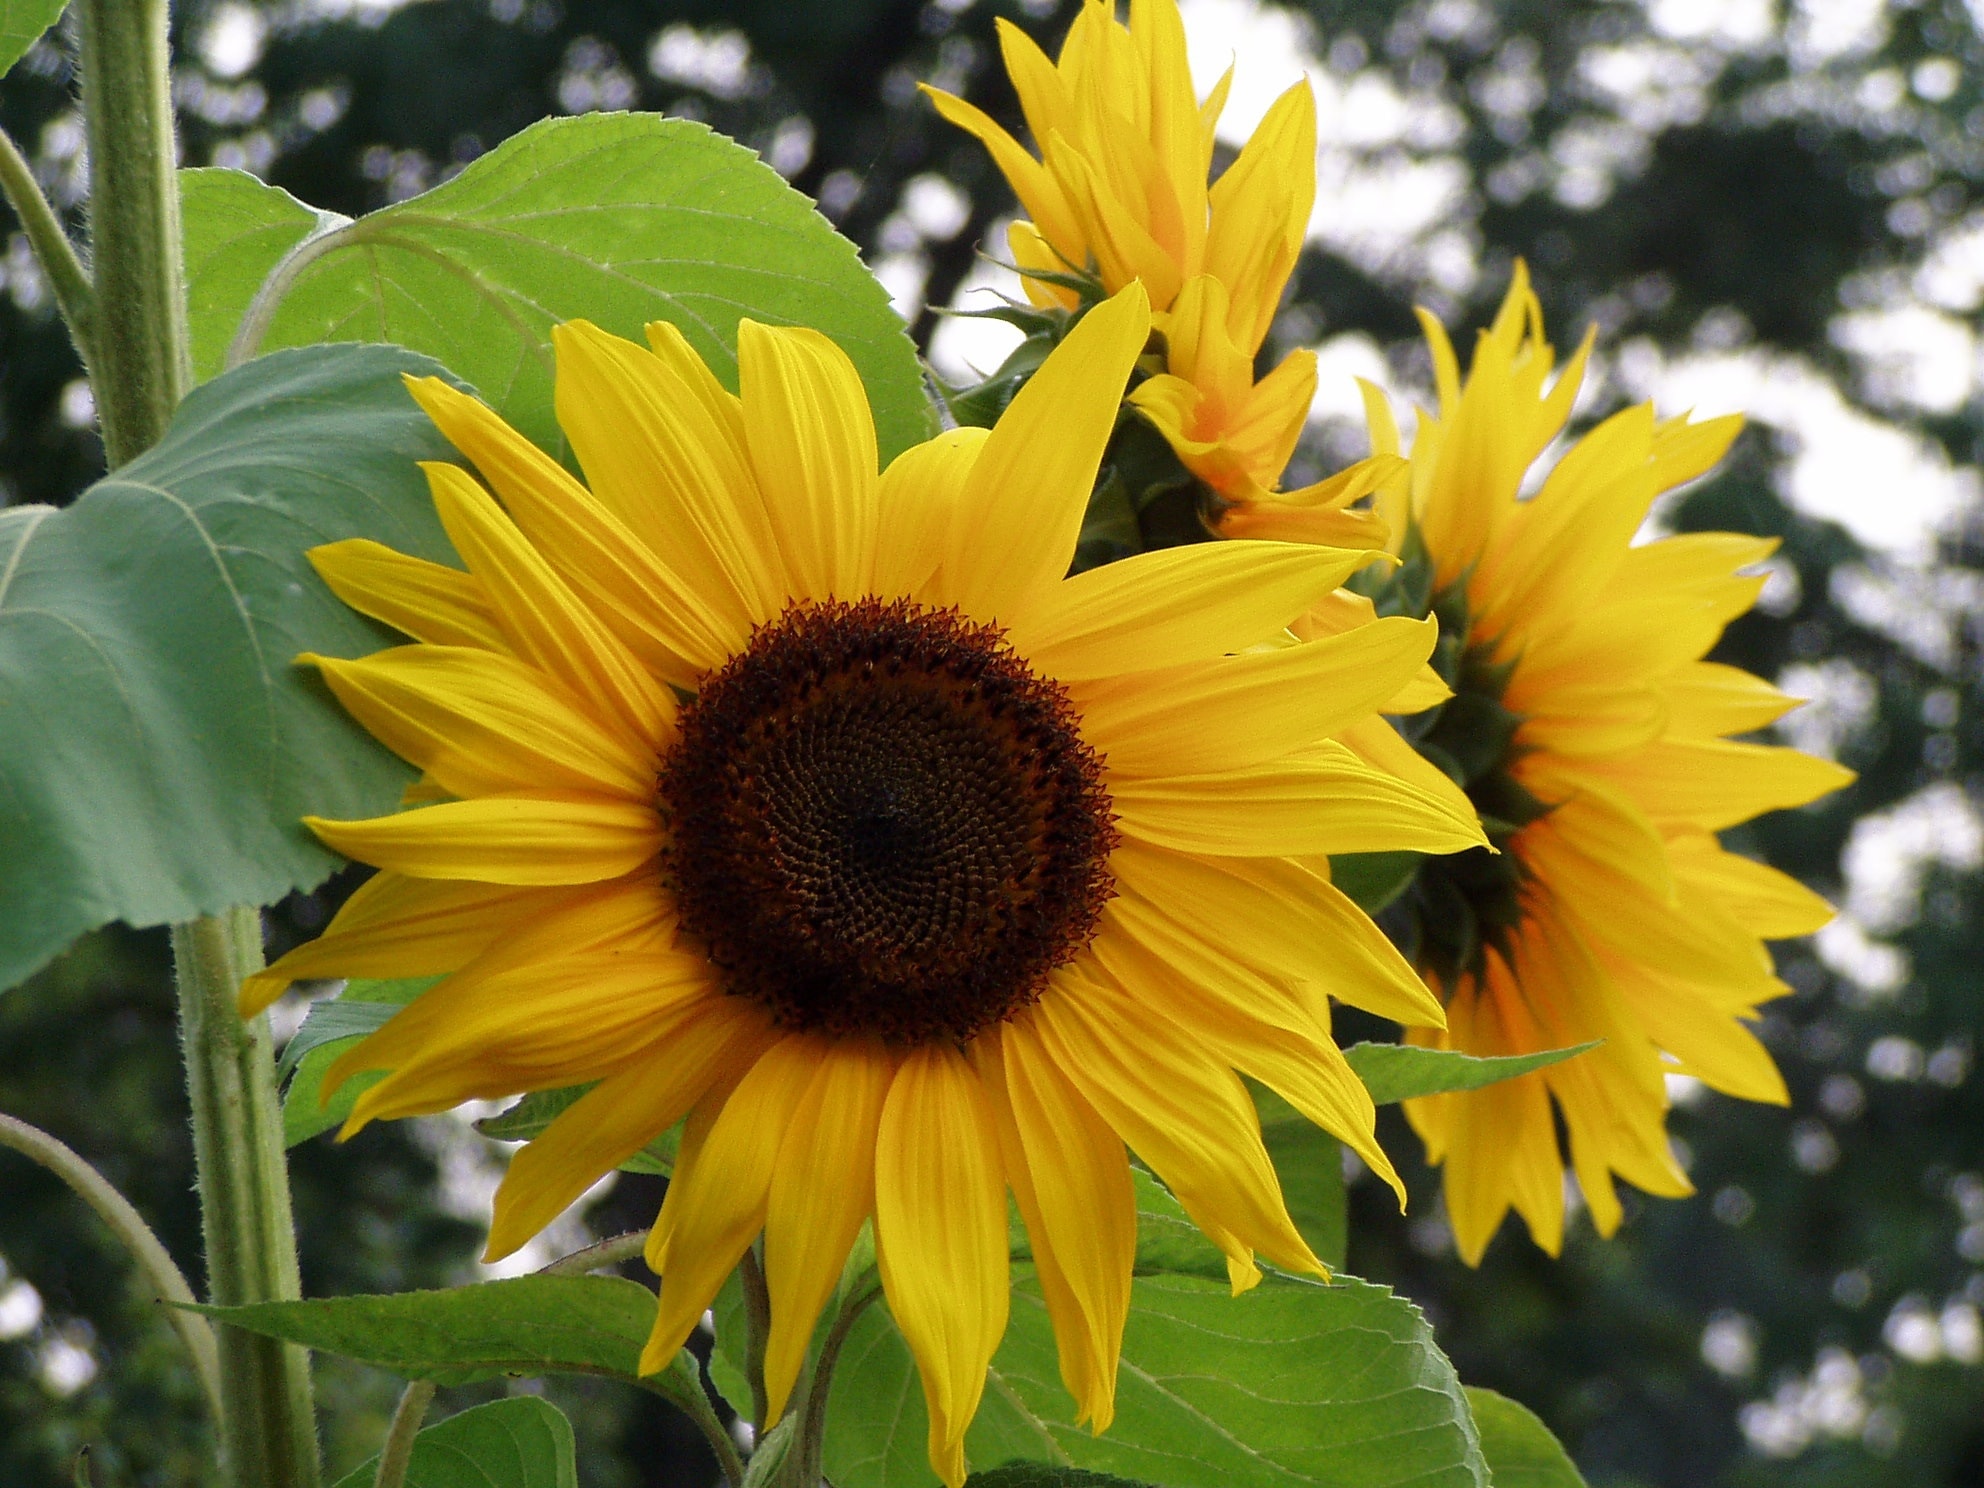 3 yellow sunflowers